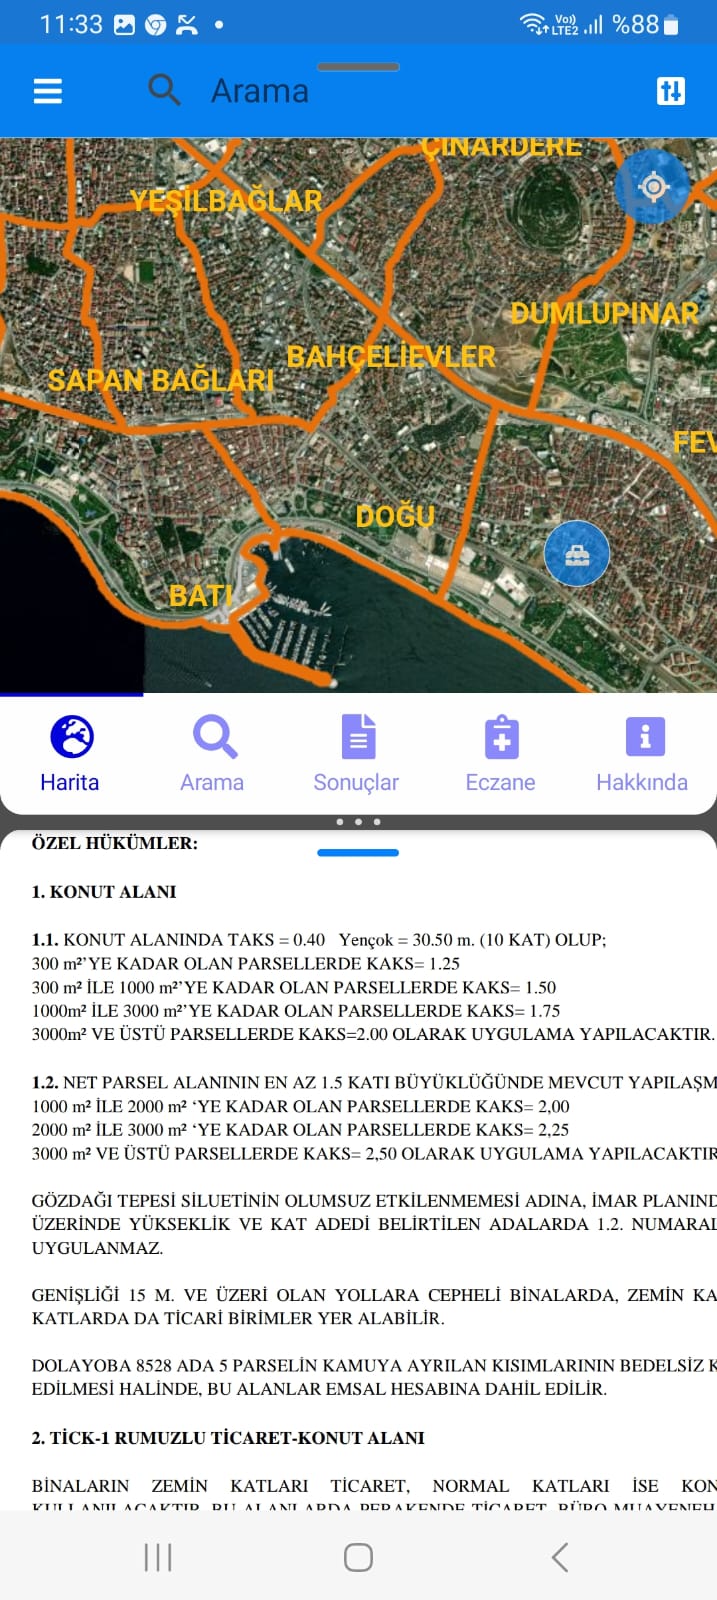 Pendik Yayalar'da Ankara Caddesine Cephe Satılık 433 M2 Arsa